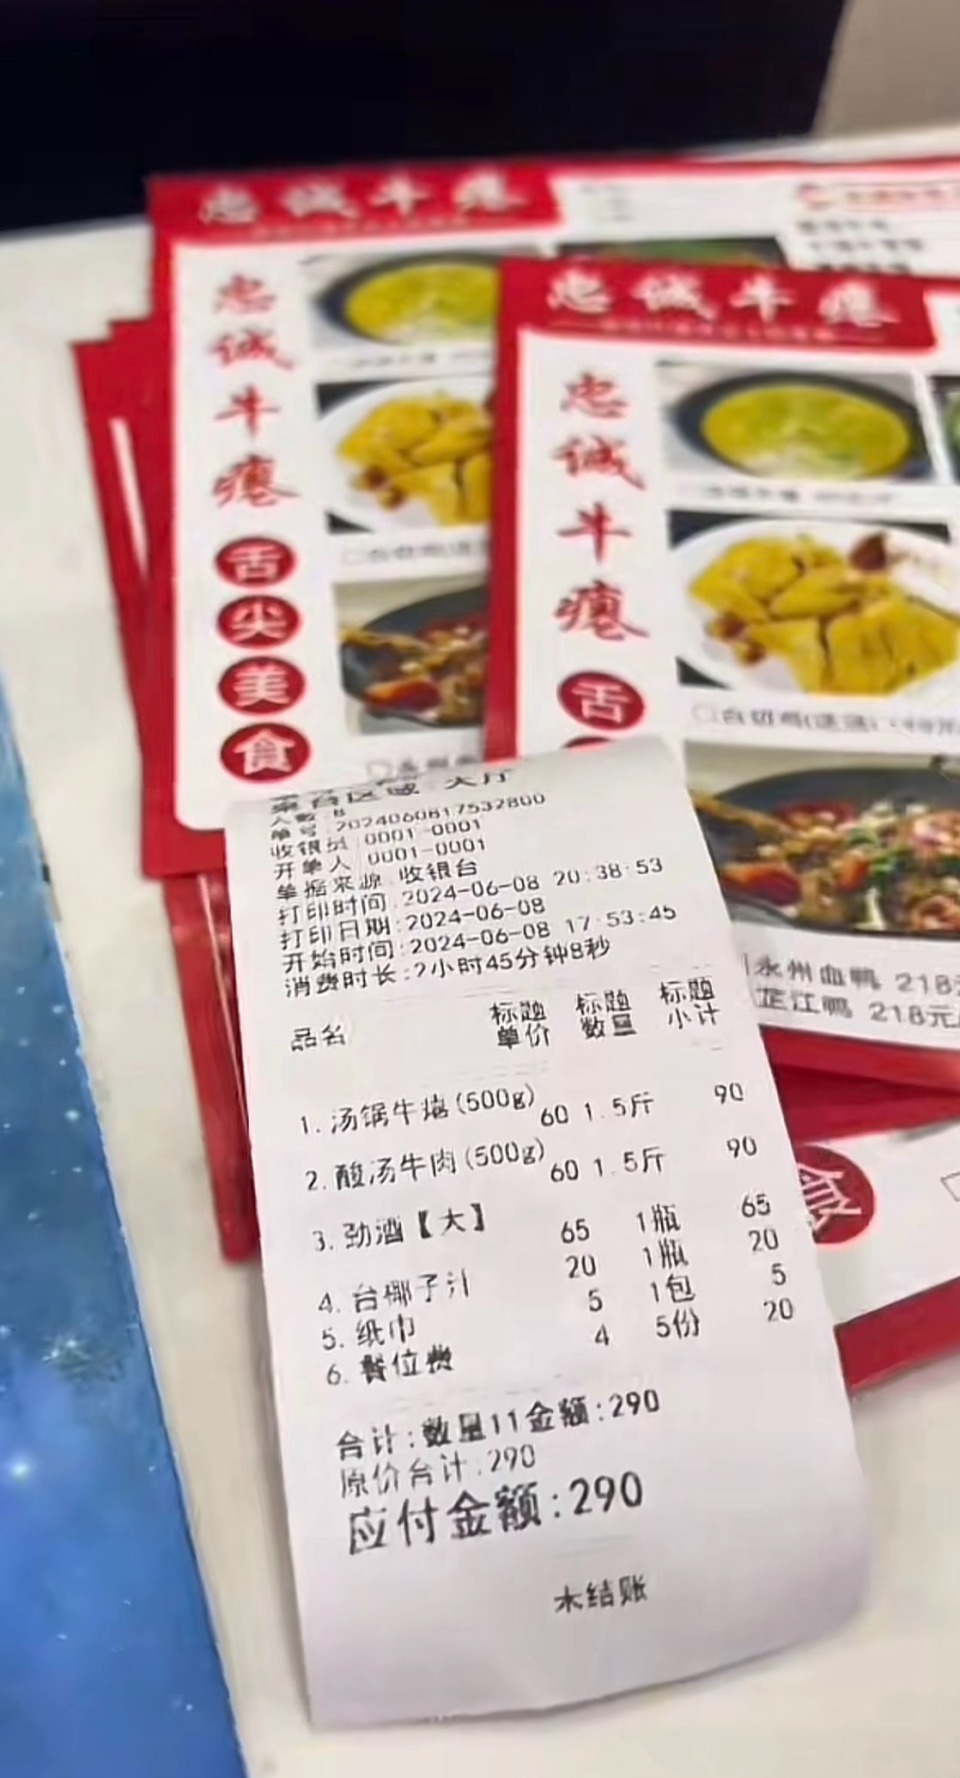 贵州男子称吃饭质疑20元餐位费后服务员让打110?店家:已开除涉事员工